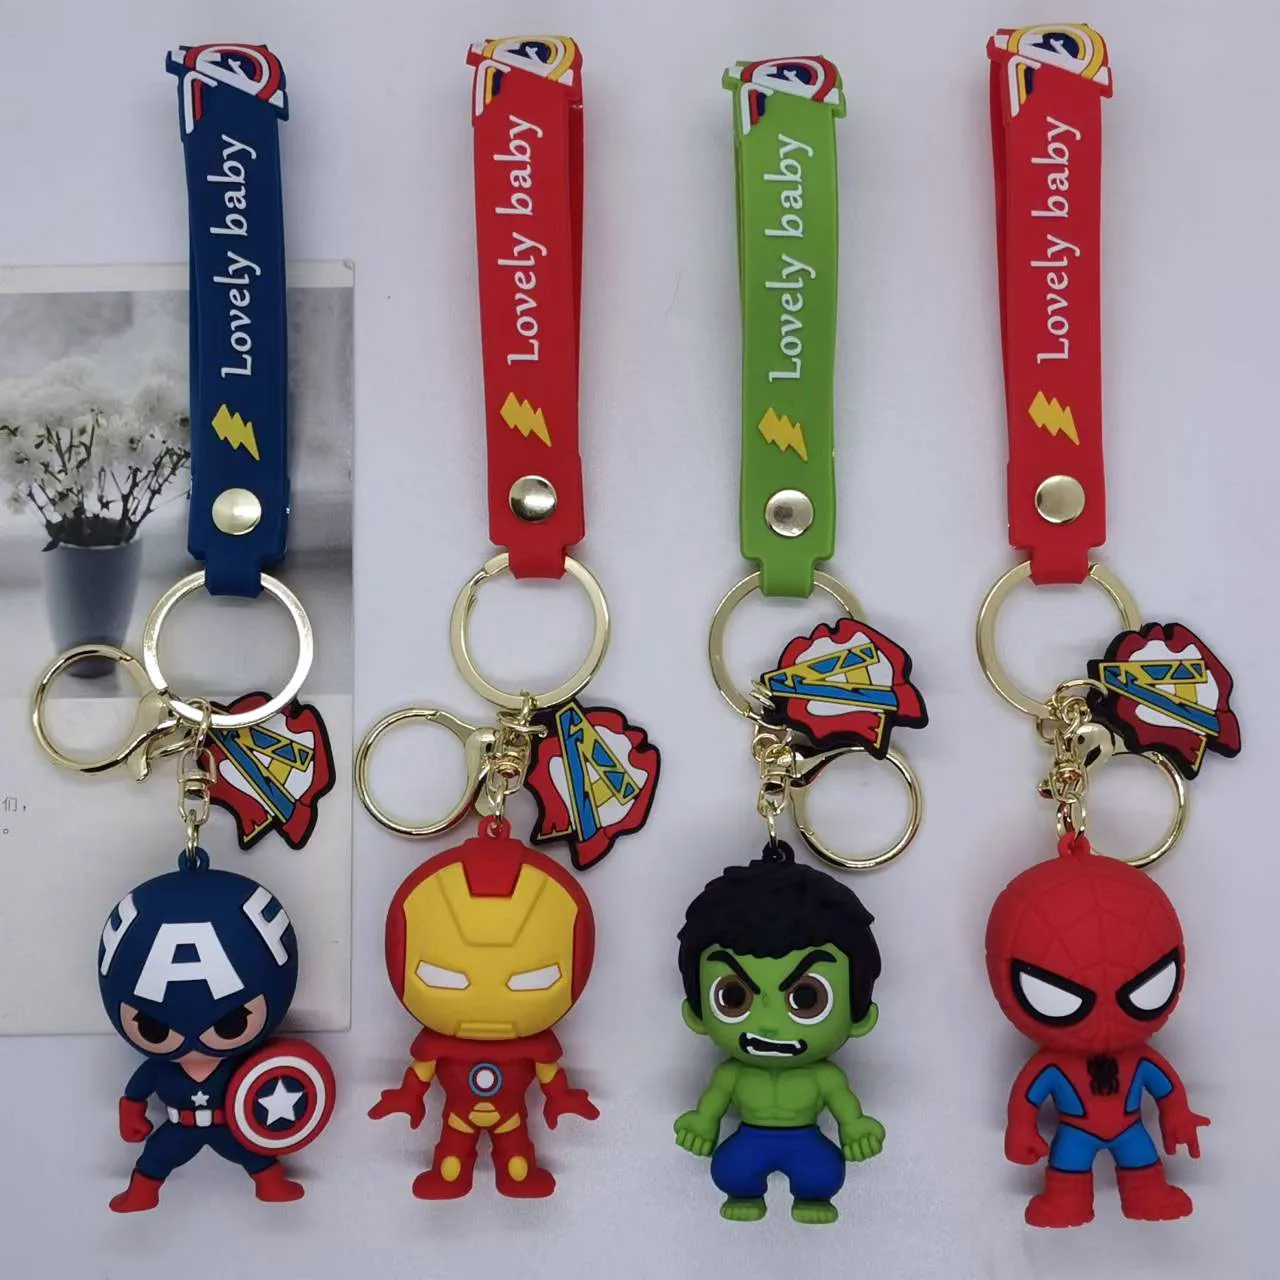 

4 вида стилей супергерои, легенды, Капитан Америка, Человек-паук, Железный человек, Халк Грут, детская игрушка, детский подарок